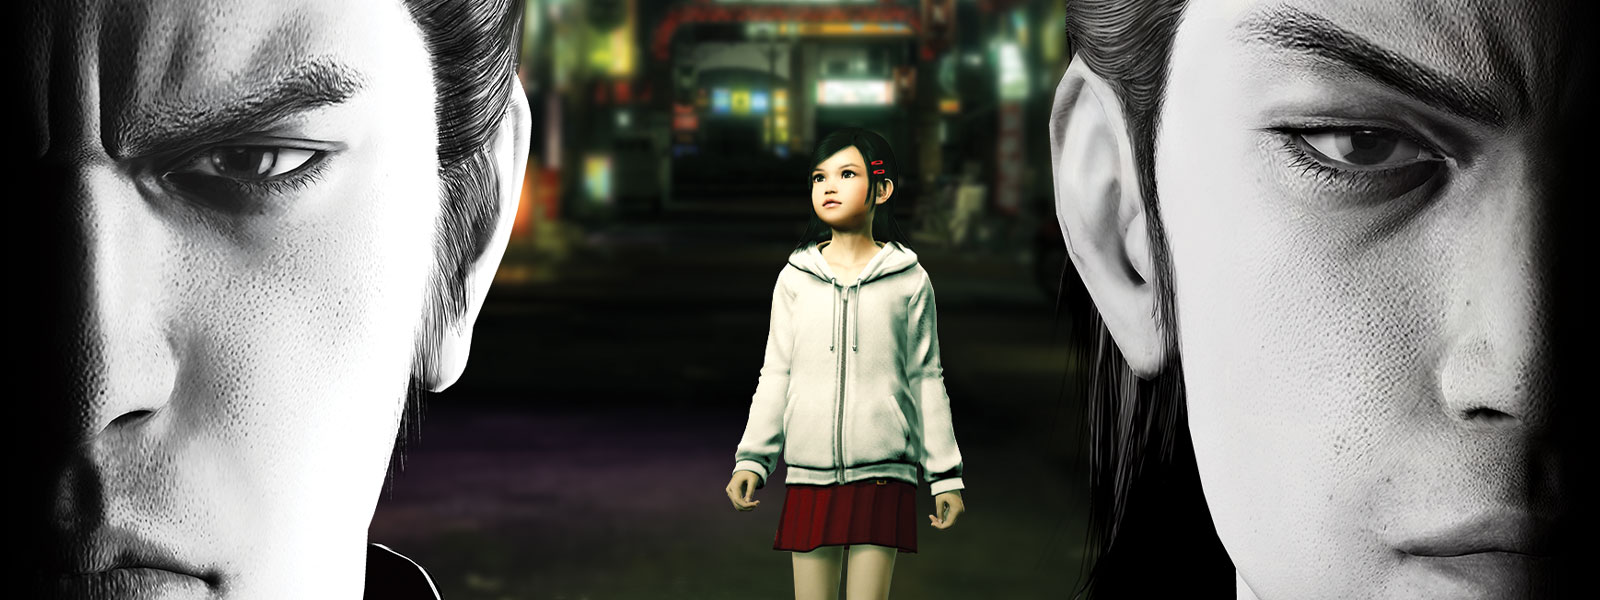 兩個 Yakuza 角色陰沉地瞪著前方，他們中間有個小女孩站在城市裡。